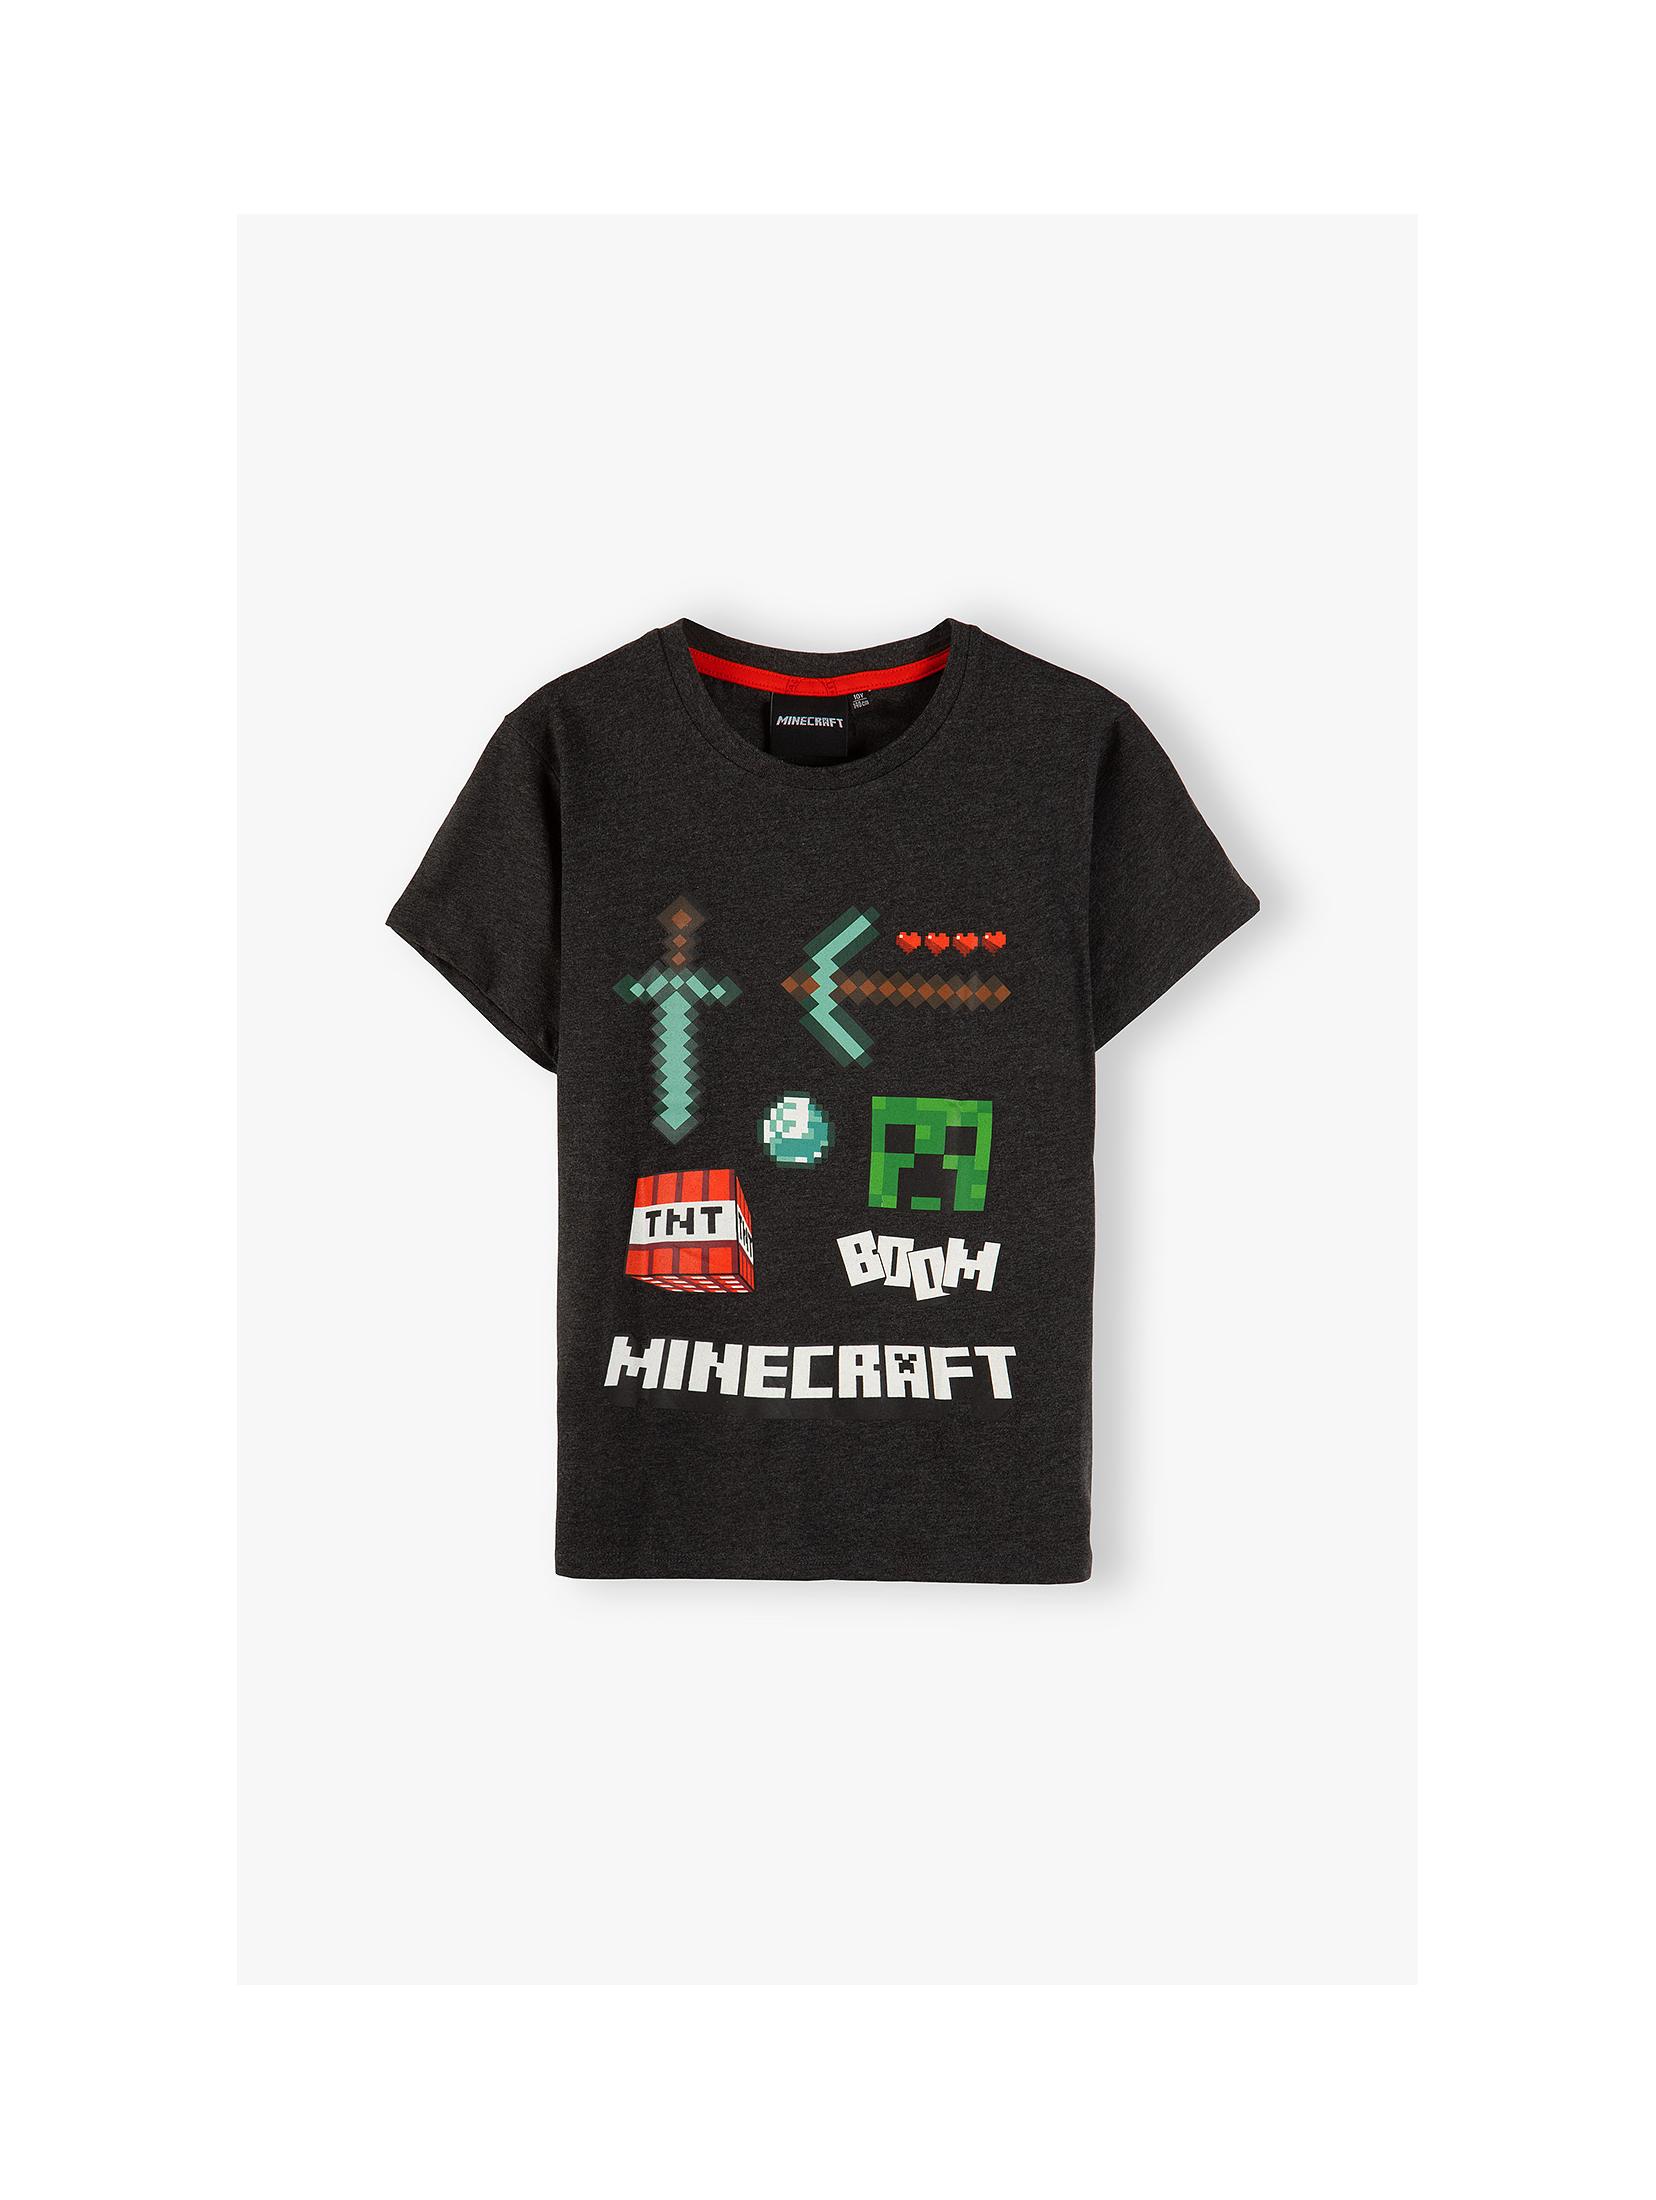 Koszulka z krótkim rękawem, Minecraft